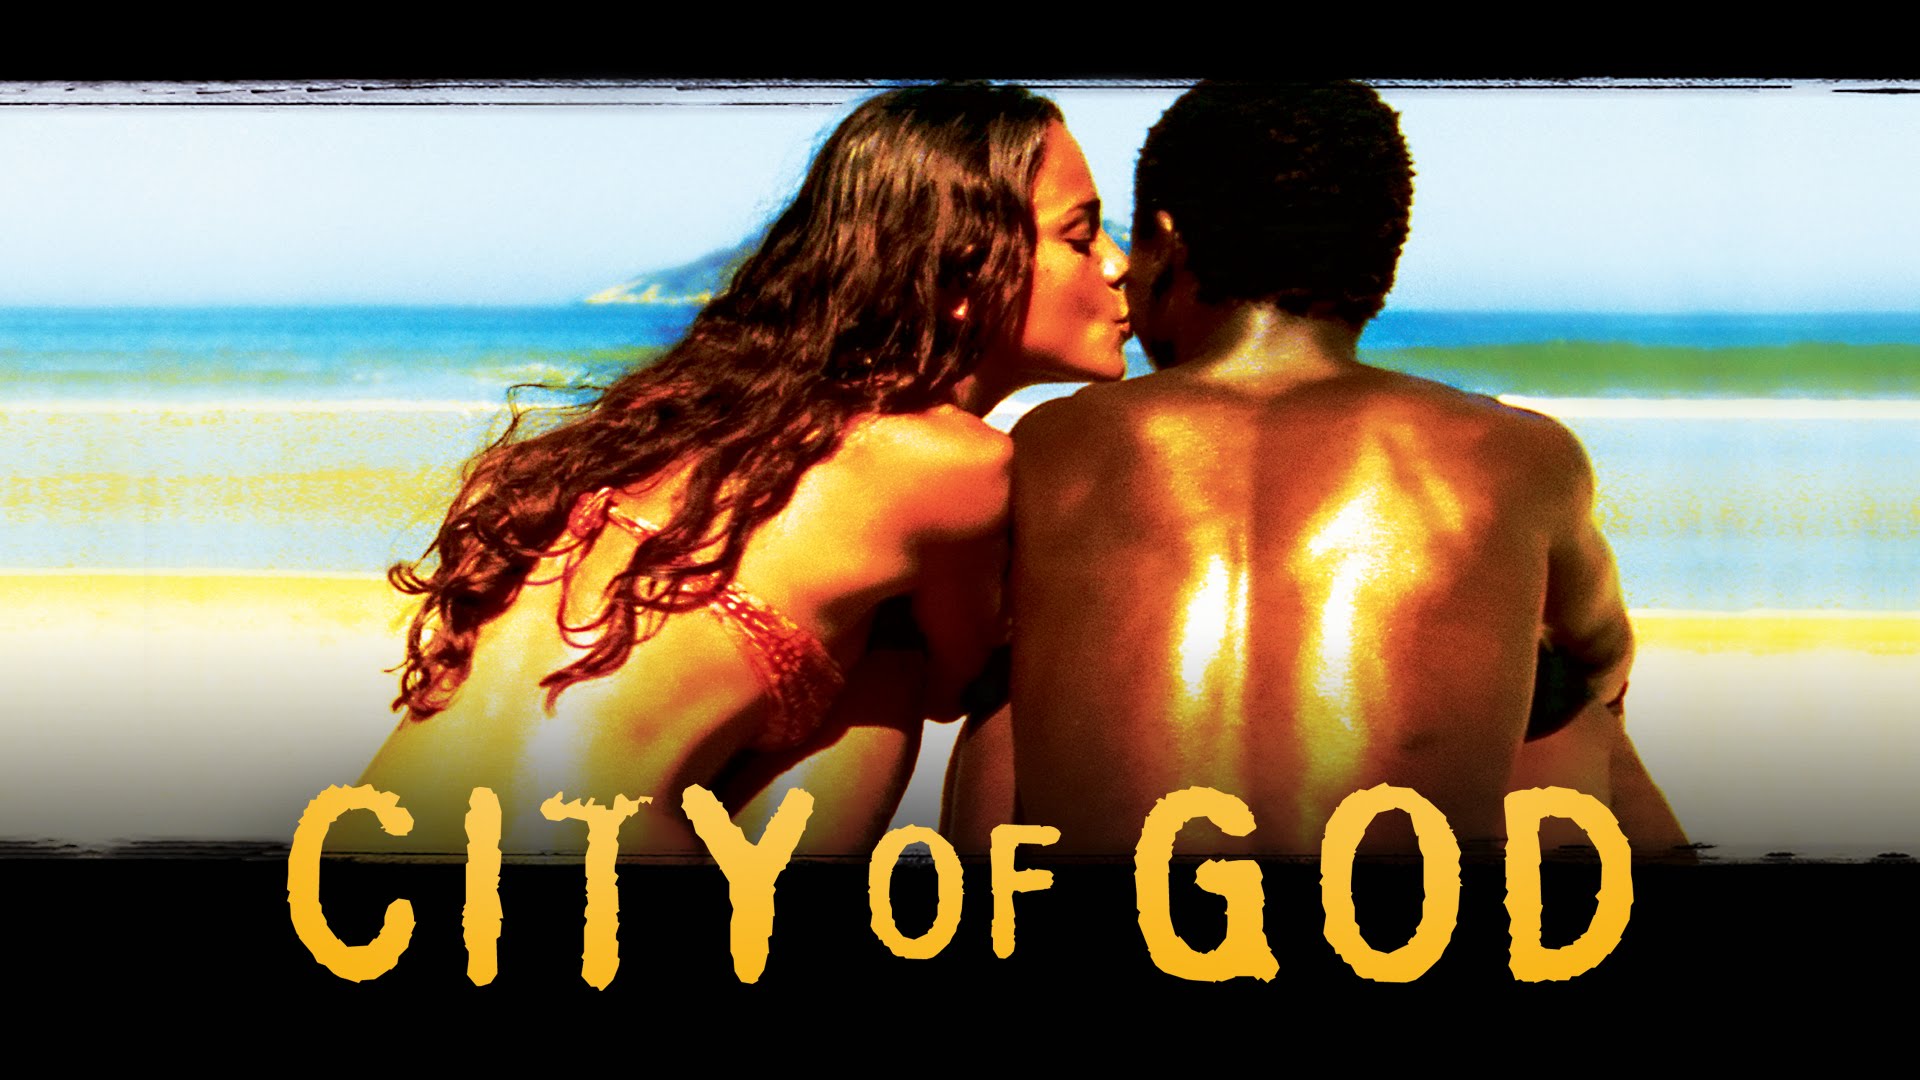 City of God | Official Trailer (HD) - Alice Braga, Seu Jorge ...